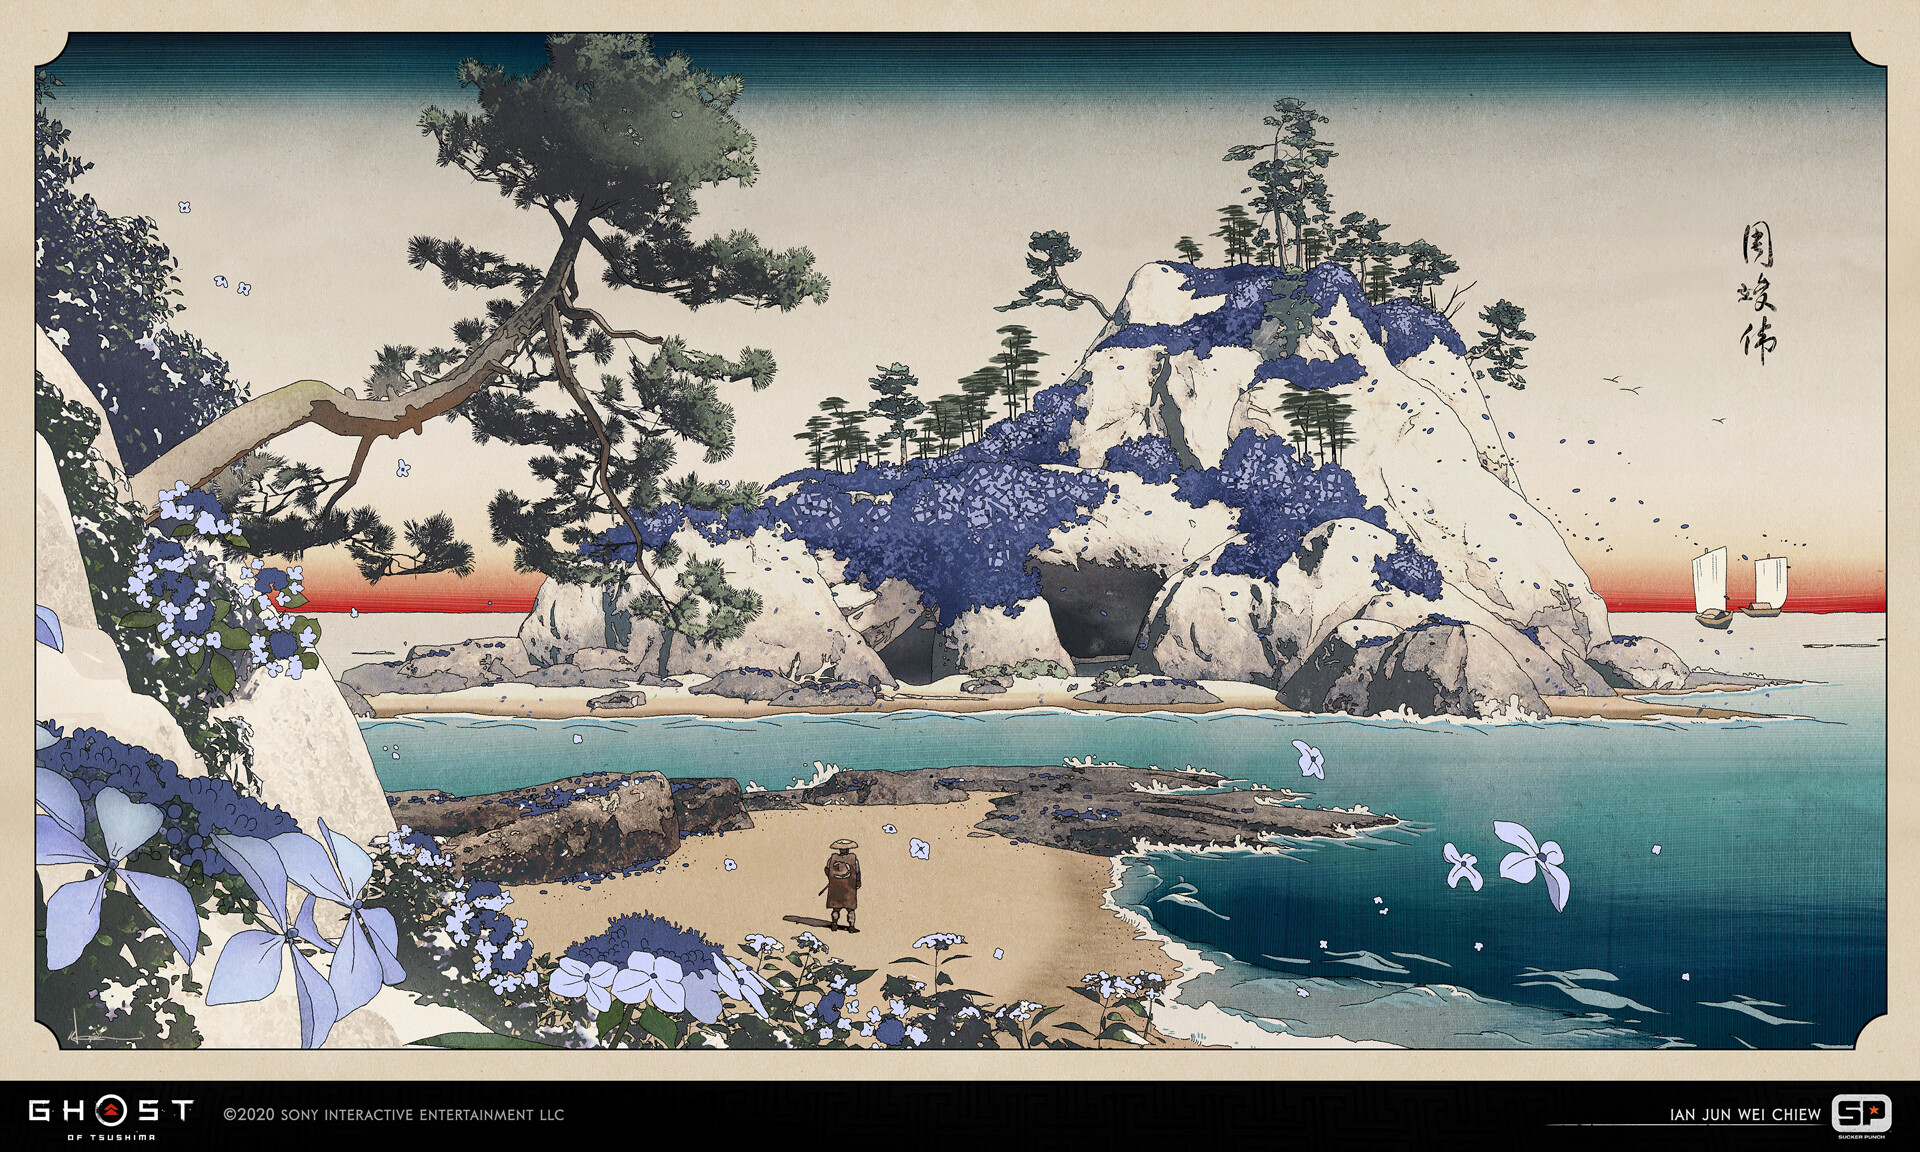 《對馬戰鬼》百餘張概念原畫賞析 再現古代日本風貌